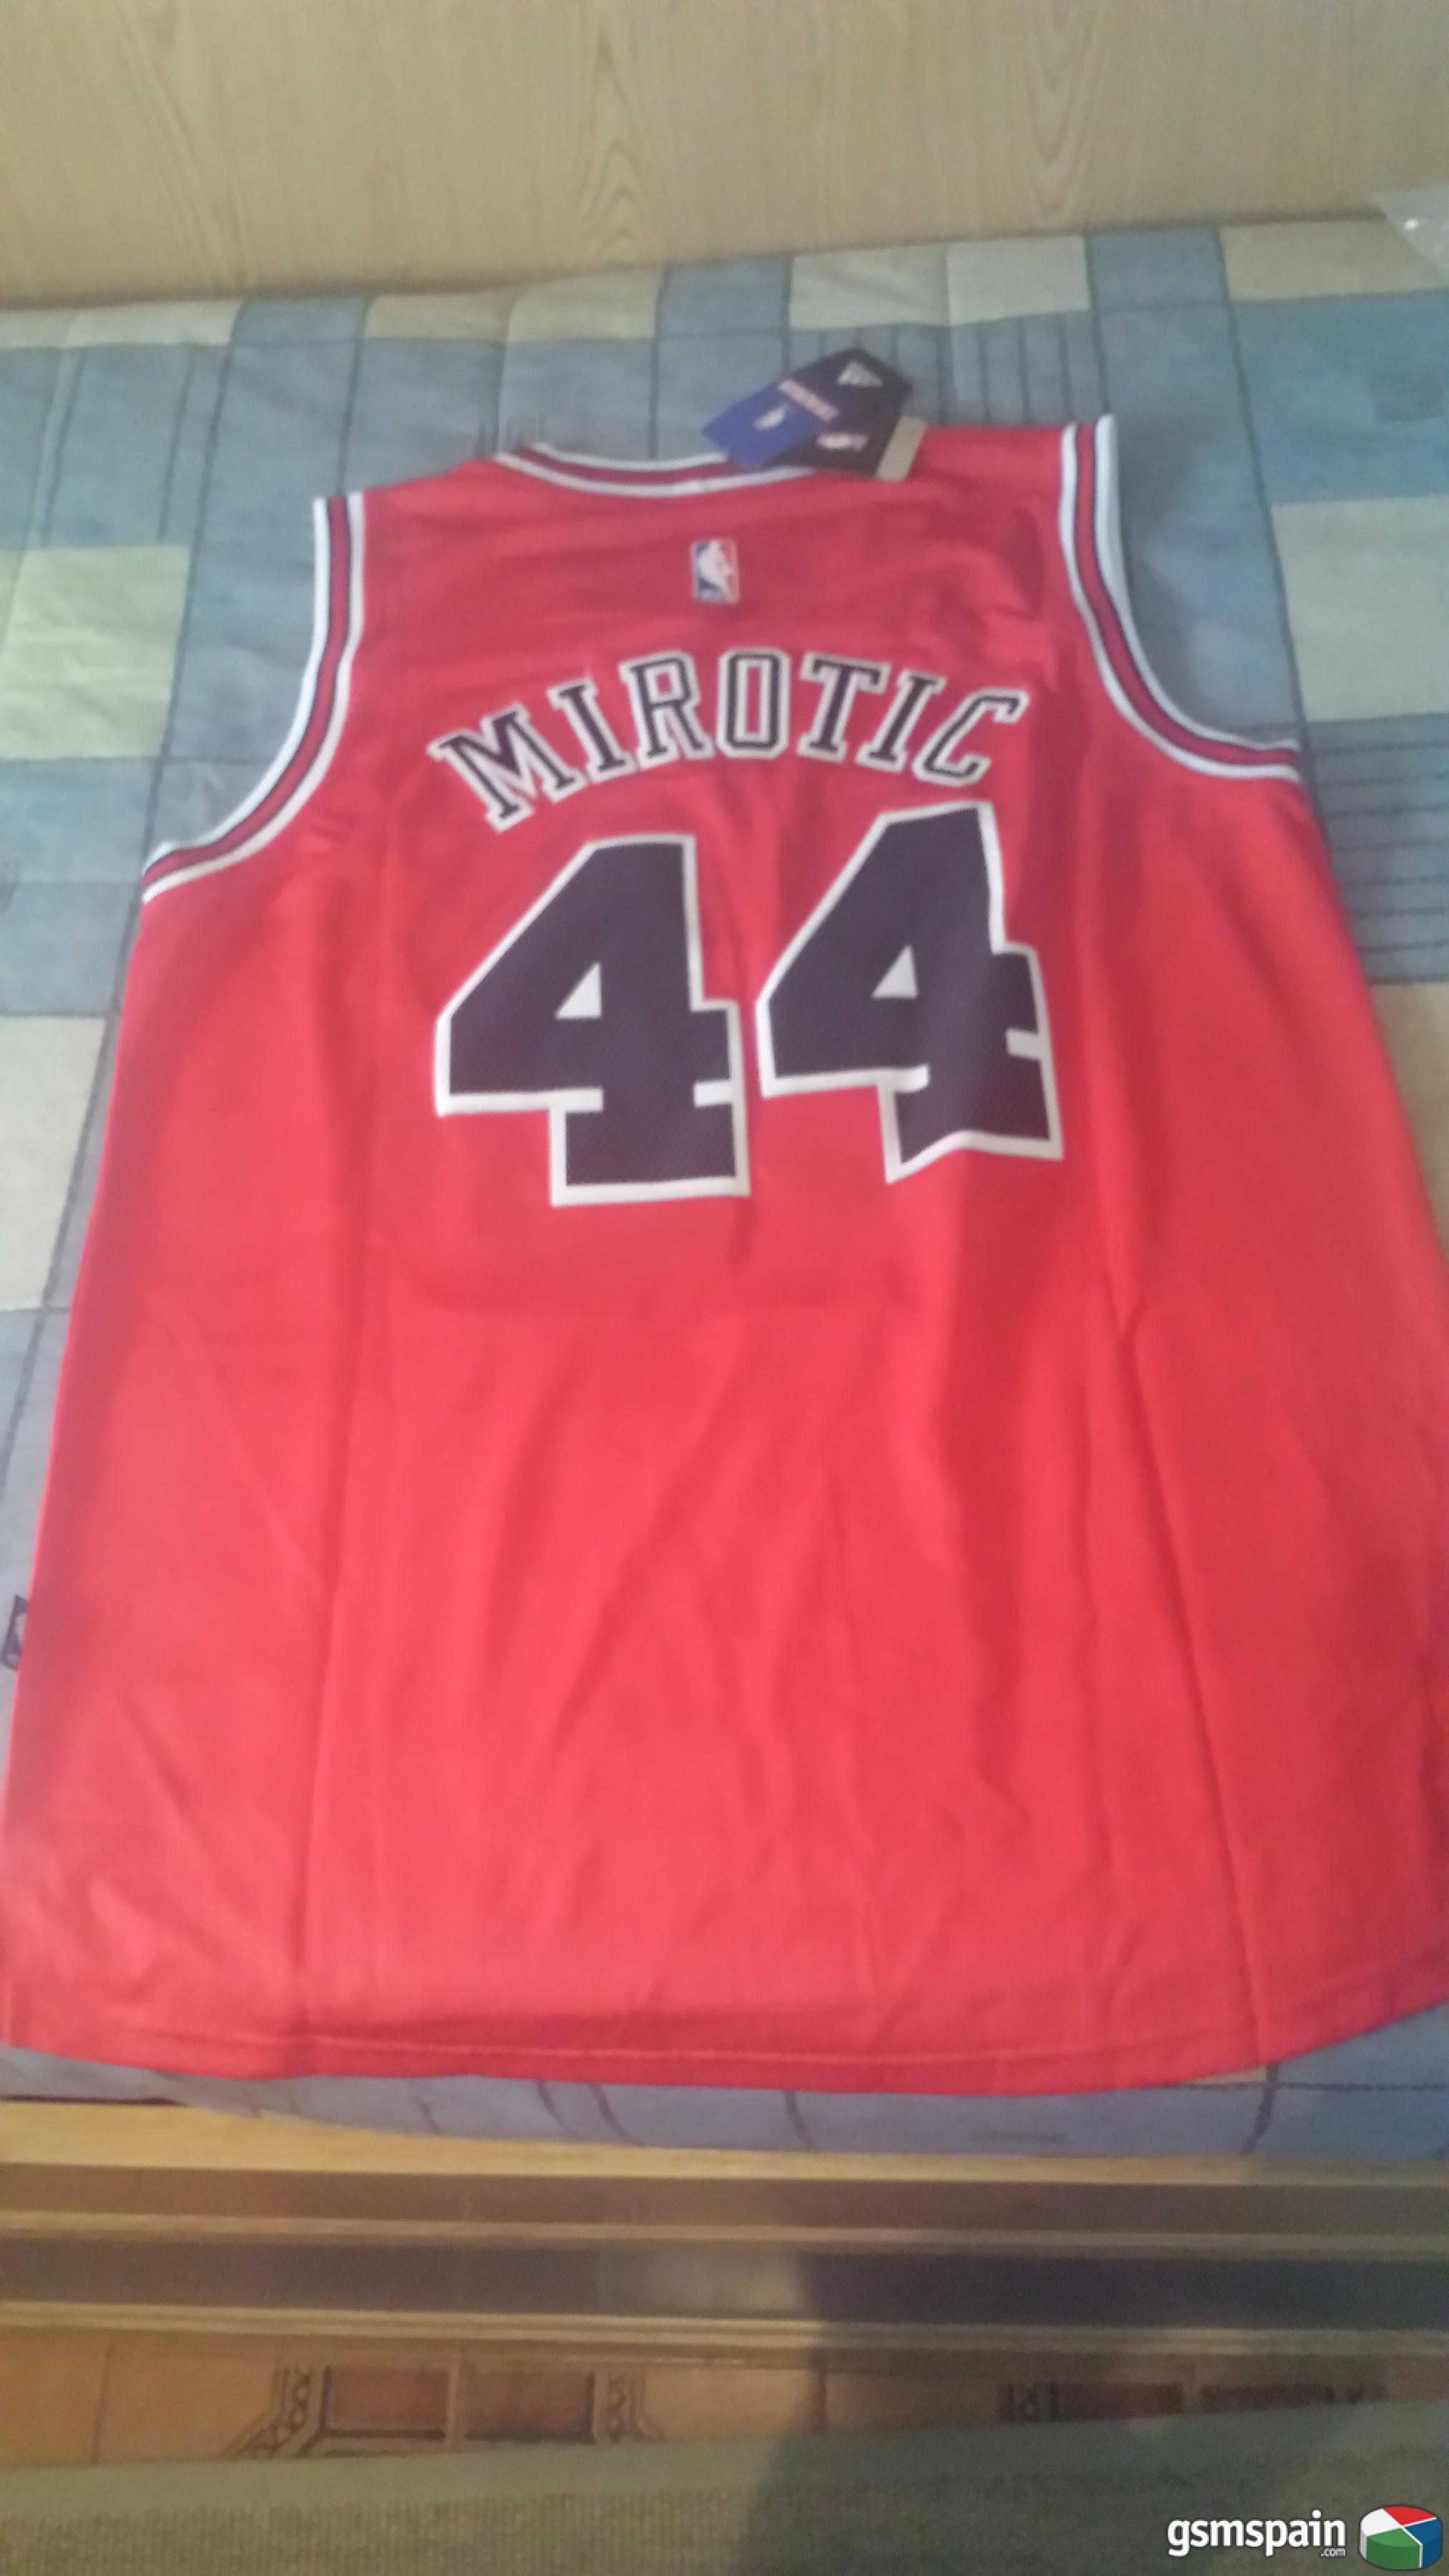 [vendo] Camiseta Chicago Bulls. Talla M. Mirotic (44). Nueva